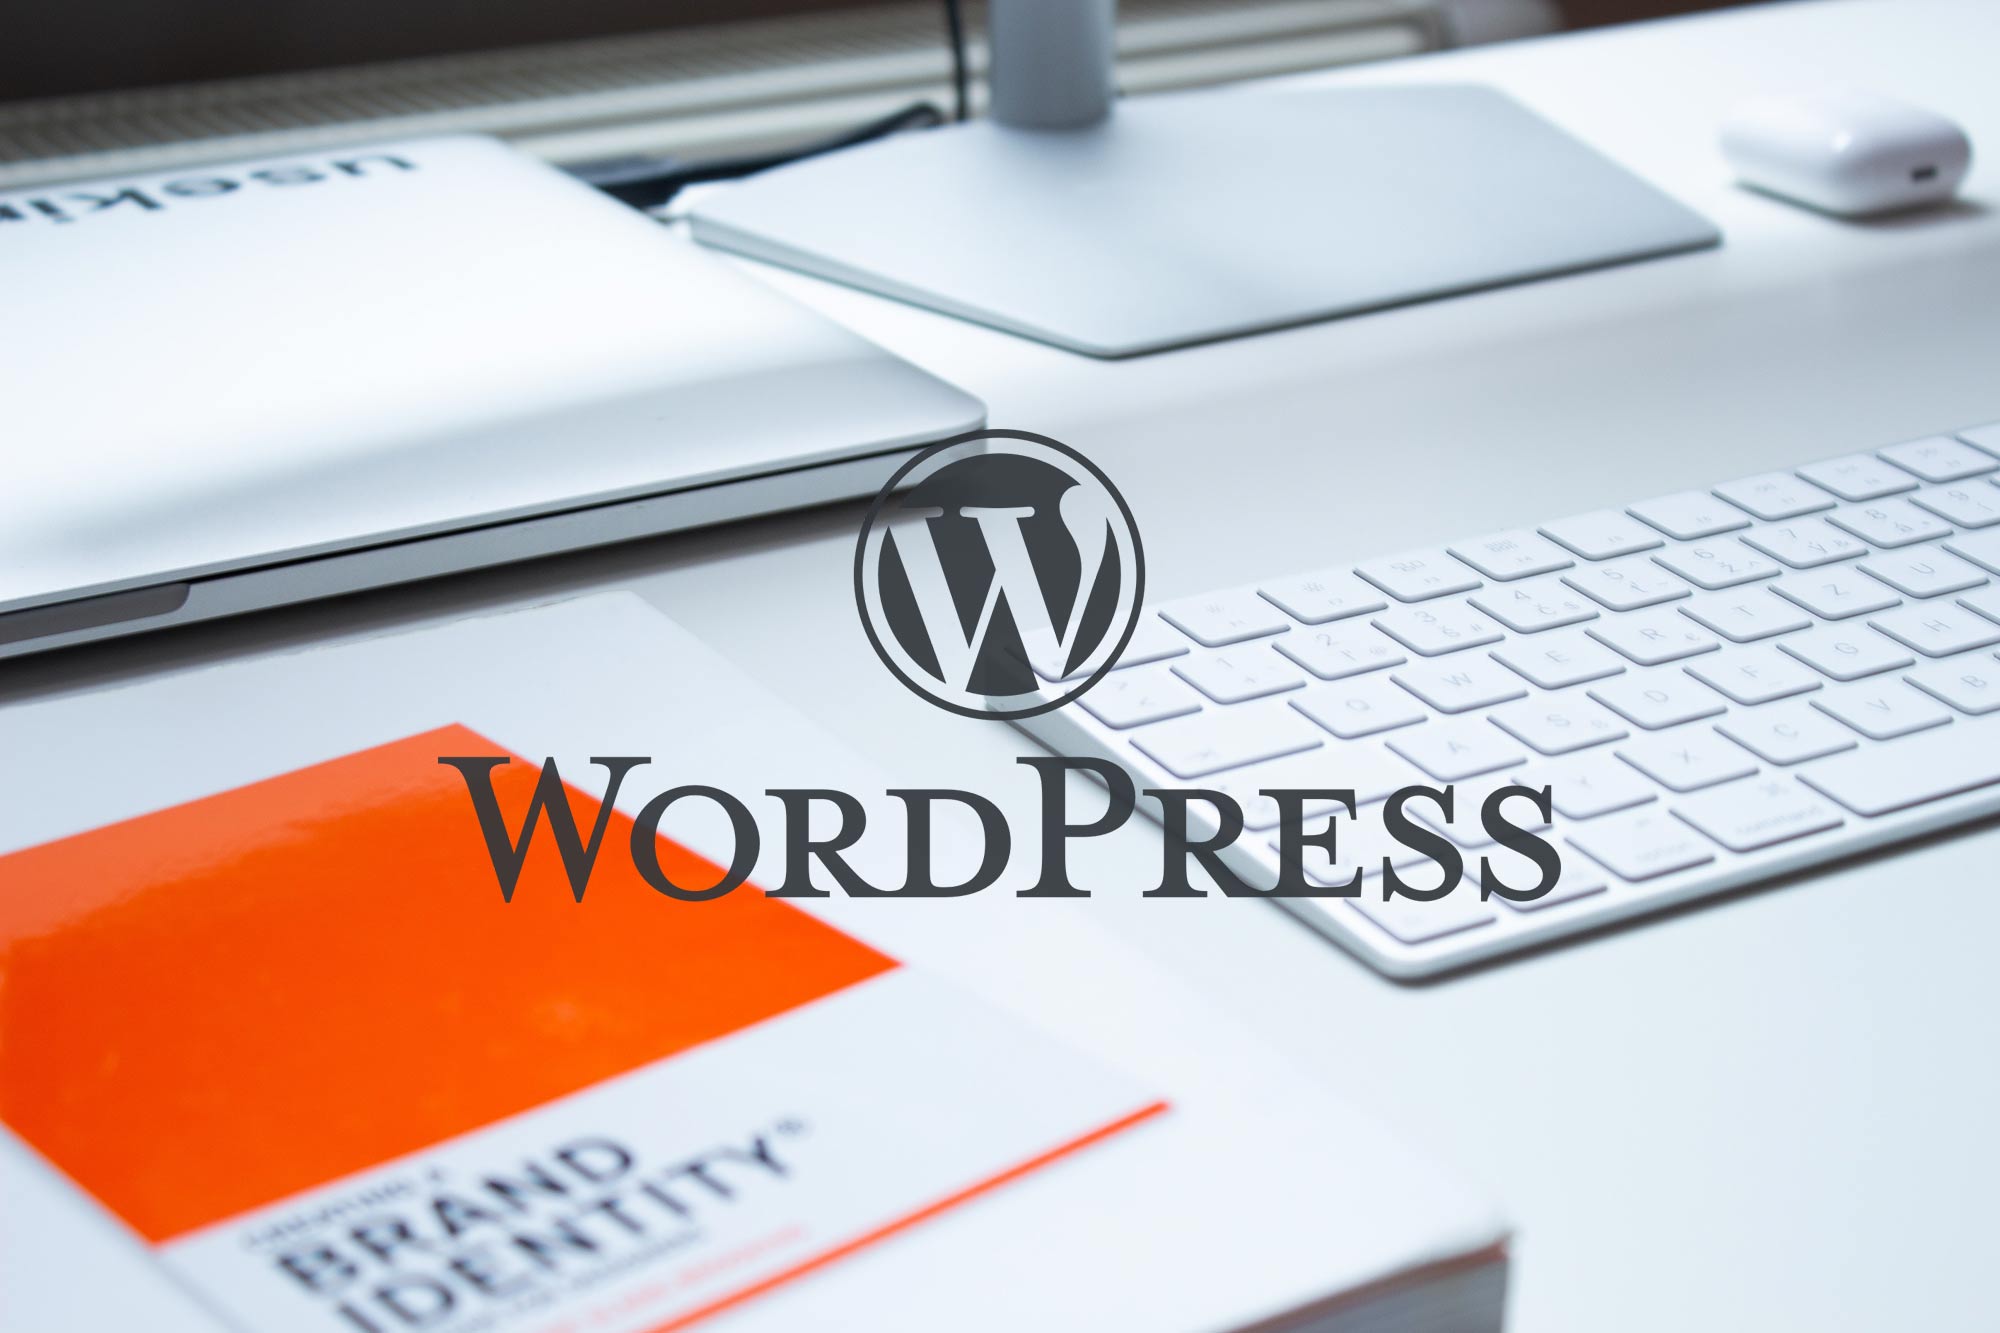 網頁設計-台北WordPress網頁設計公司-2.5D品牌顧問:市場佔有率、市佔率WordPress是最主流的CMS內容管理網站系統-國際知名事業使用WordPress建構網站的很多如：TechCrunch, The New Yorker, Beyonc...等。Wordpress 在CM Swordpress網頁設計的市場佔有率是60％;總網路網站佔有率33 (2019 W3Techs)...(wordpress網站設計報價單、收費、費用洽詢）推薦提供：響應式wordpress網頁設計、公司品牌wordpress網站設計、公司wordpress網頁形象設計、wordpres關鍵字優化、wordpress網路開店、購物wordpress網站設計、wordpress網頁設計作品、wordpress網頁設計步驟、wordpress網頁設計範例、設計公司wordpress網頁設計、官wordpress網設計、學校wordpress網頁設計、貿易wordpress網頁設計、外銷wordpress網頁設計、研究中心wordpress網頁設計、大學wordpress網頁設計、系所wordpress網頁設計、藝廊wordpress網頁設計)台北網頁設計公司推薦-提供RWD響應式網頁設計,公司形象網頁設計,公司網站建置架設,SEO關鍵字優化與企業客製化網頁設計;推薦Wordpress套版與網頁設計作品集(網頁設計方案,價格費用,收費報價單與網頁設計步驟流程洽詢)電商購物、網站設計服務觸及台中,台南,高雄,桃園,新竹與北台灣-歡迎聯繫。網頁設計範例有公司ㄧ頁式網頁設計,科技公司網站設計,設計公司網頁設計,網頁設計美編,公司官網設計,餐廳網站設計,工作室網頁設計,貿易網頁設計,外銷網頁設計,大學網頁設計,系所學校網頁設計,研究中心網頁設計,藝廊網頁設計...